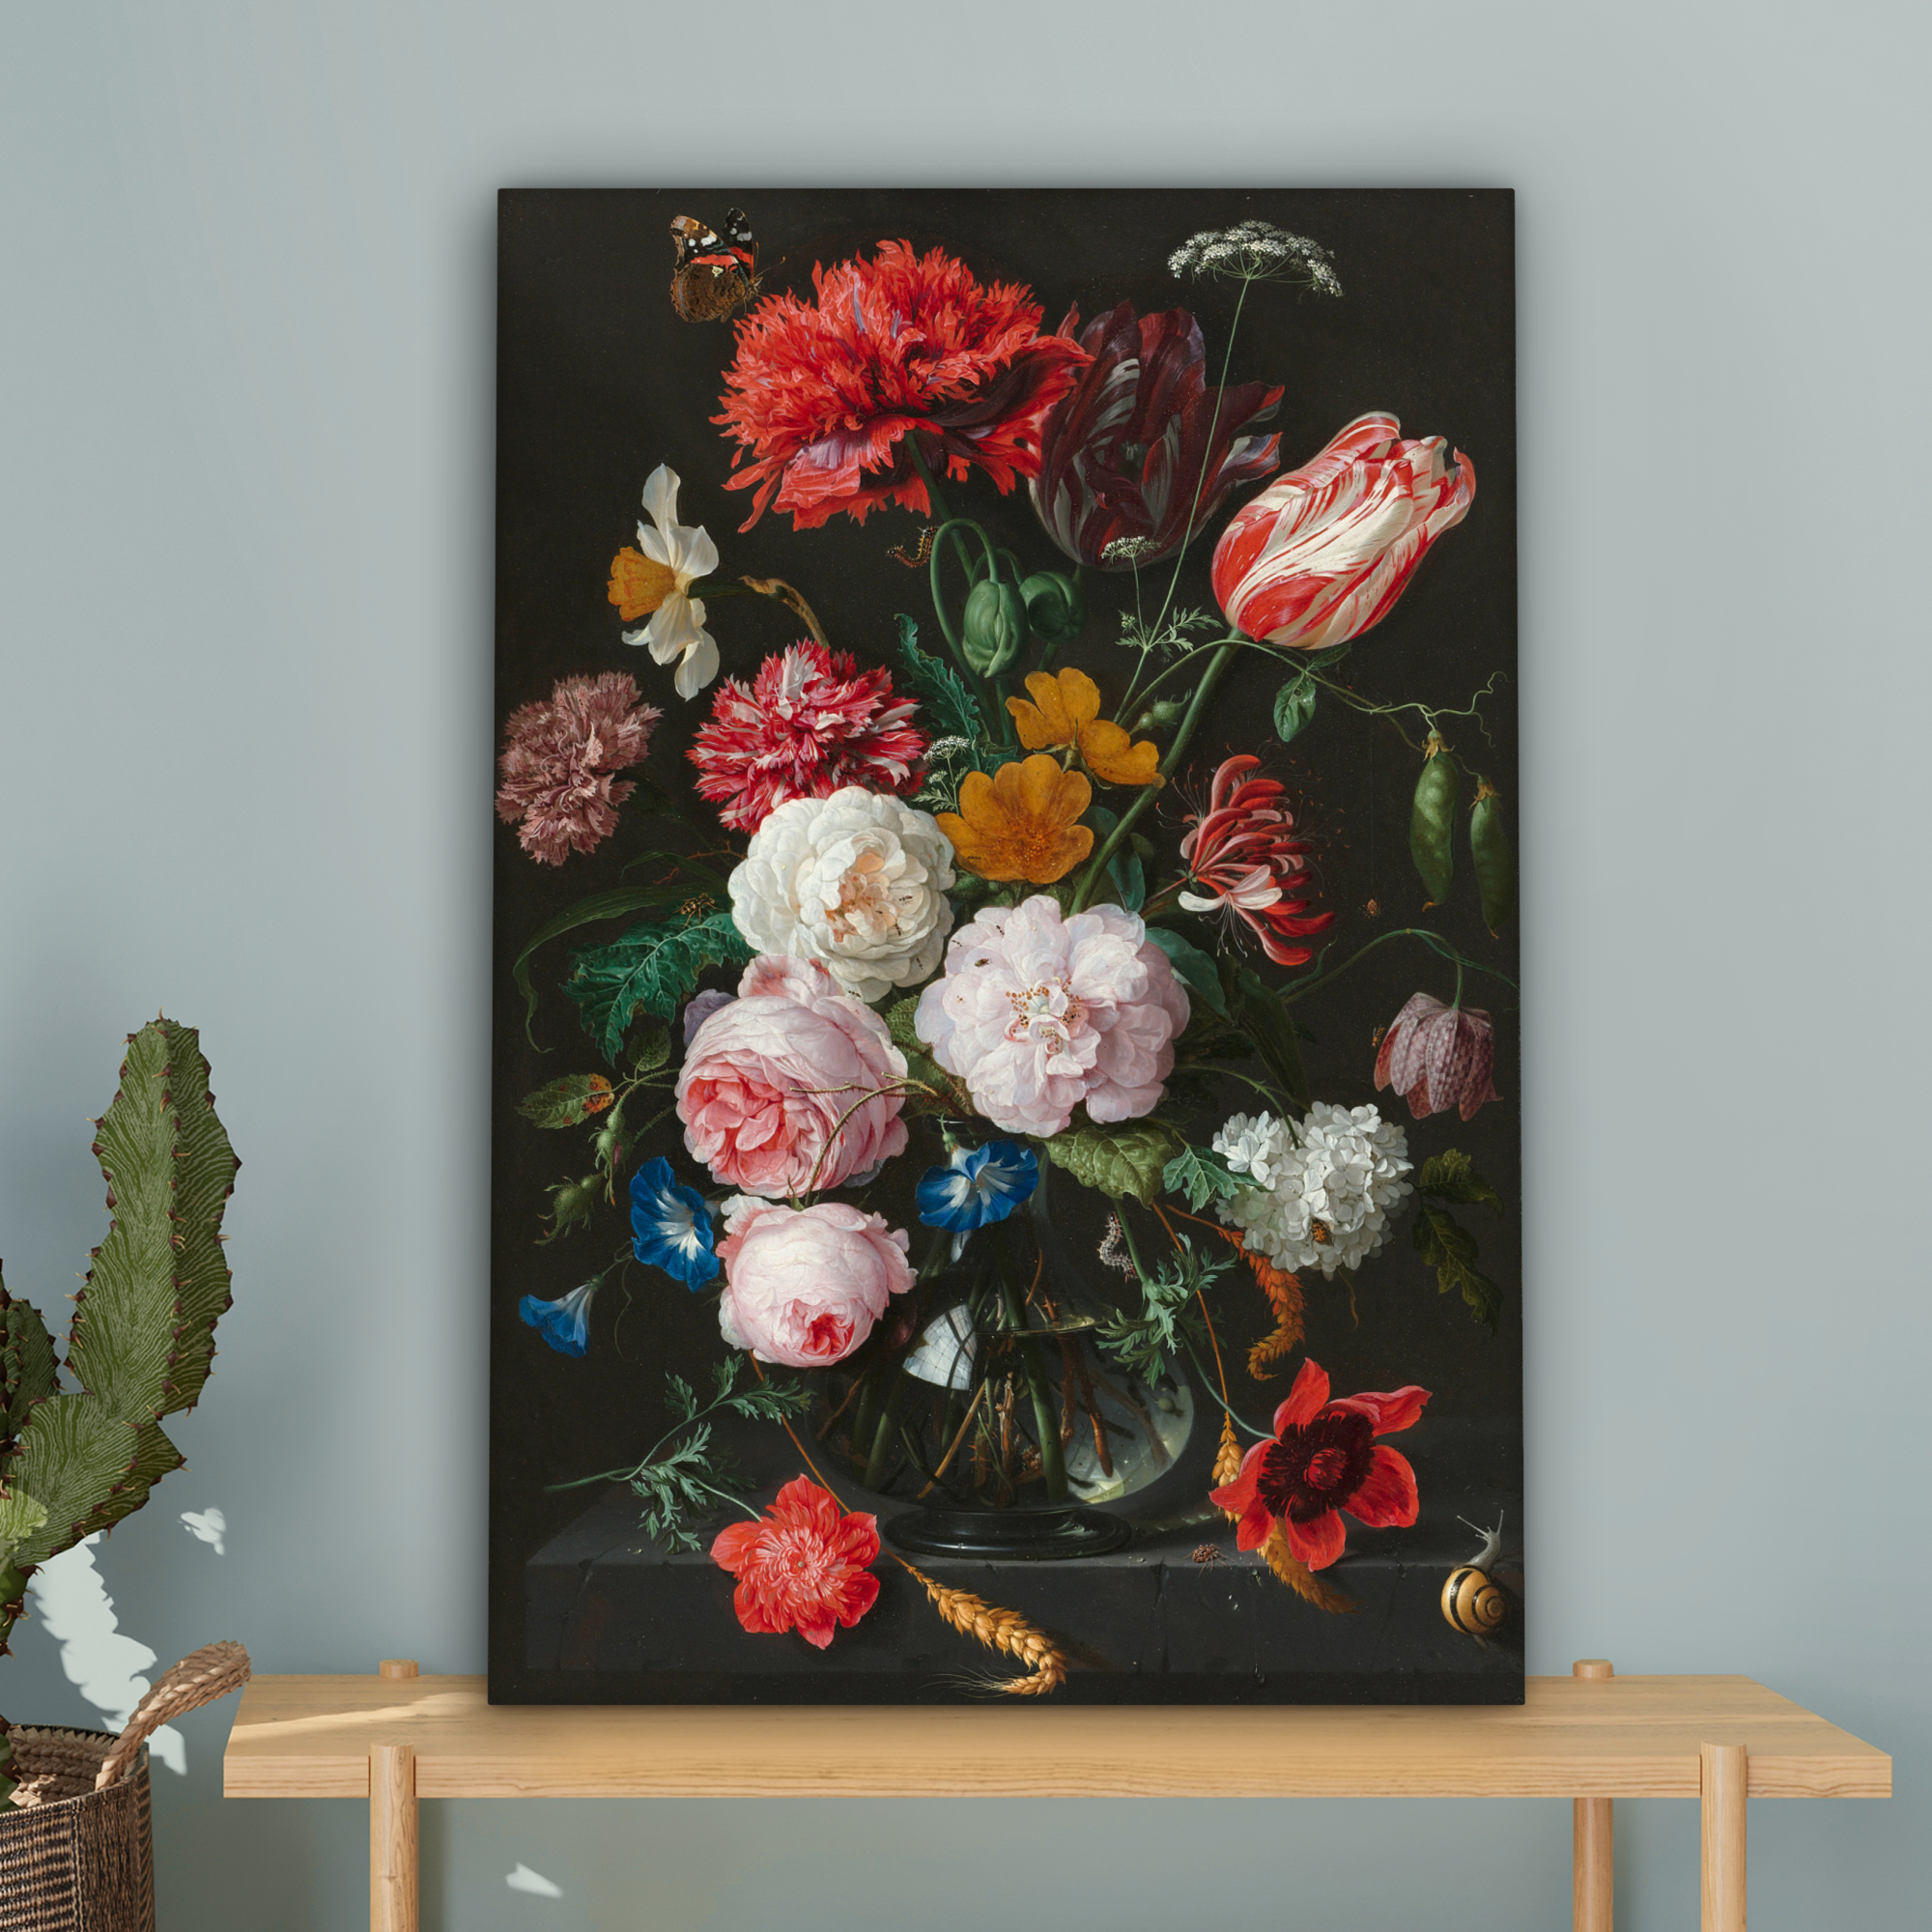 Leinwandbild - Stillleben mit Blumen in einer Glasvase - Gemälde von Jan Davidsz. de Heem-4